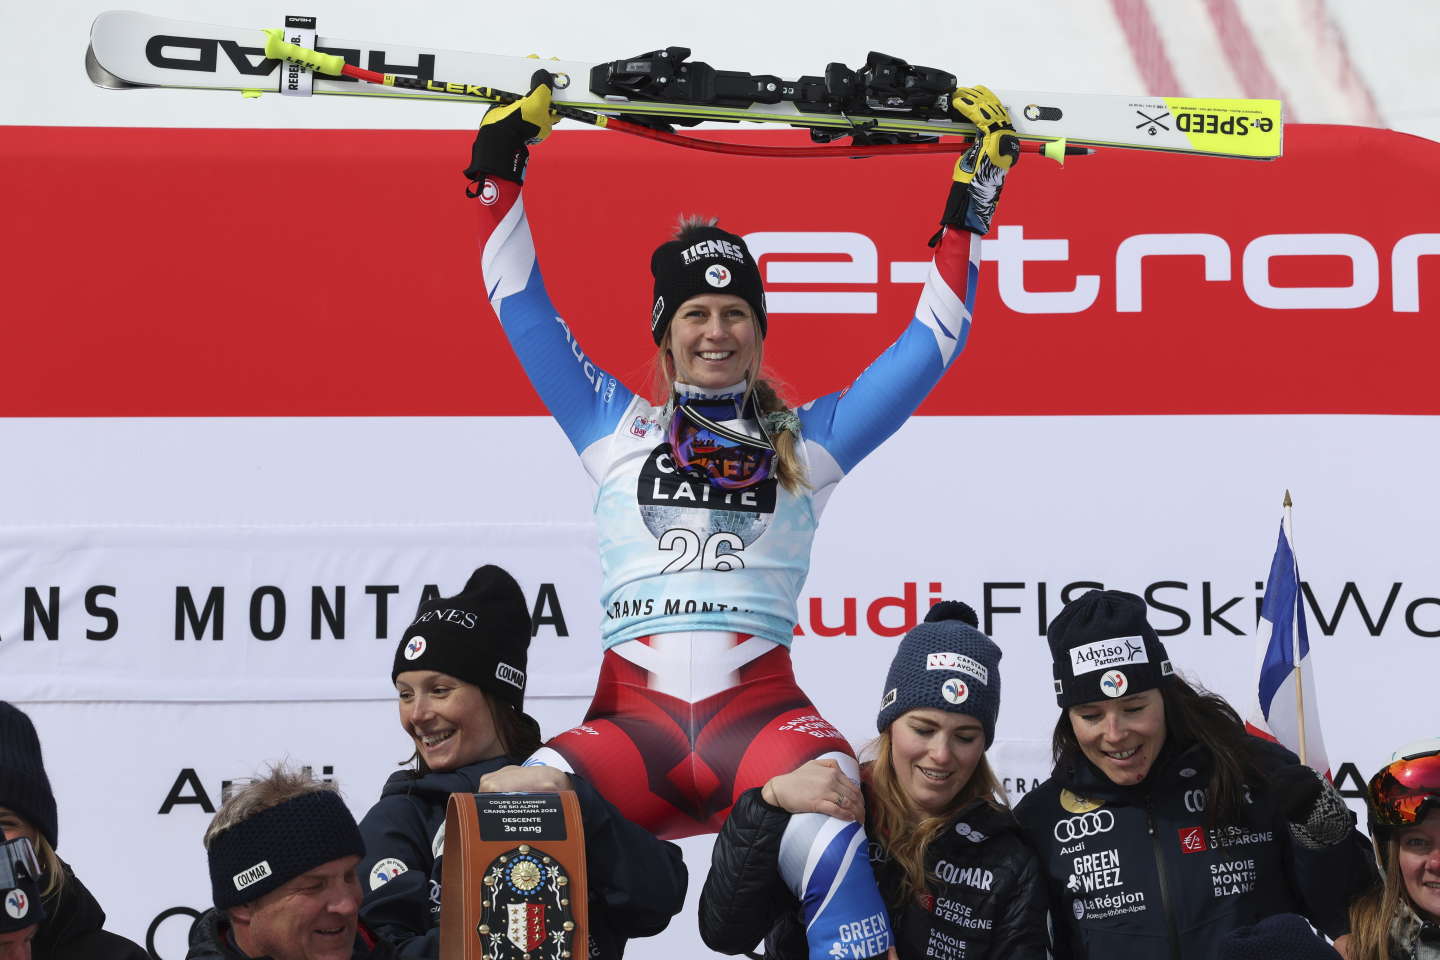 Ski alpin : premier podium en Coupe du monde pour Laura Gauché, troisième de la descente à Crans-Montana